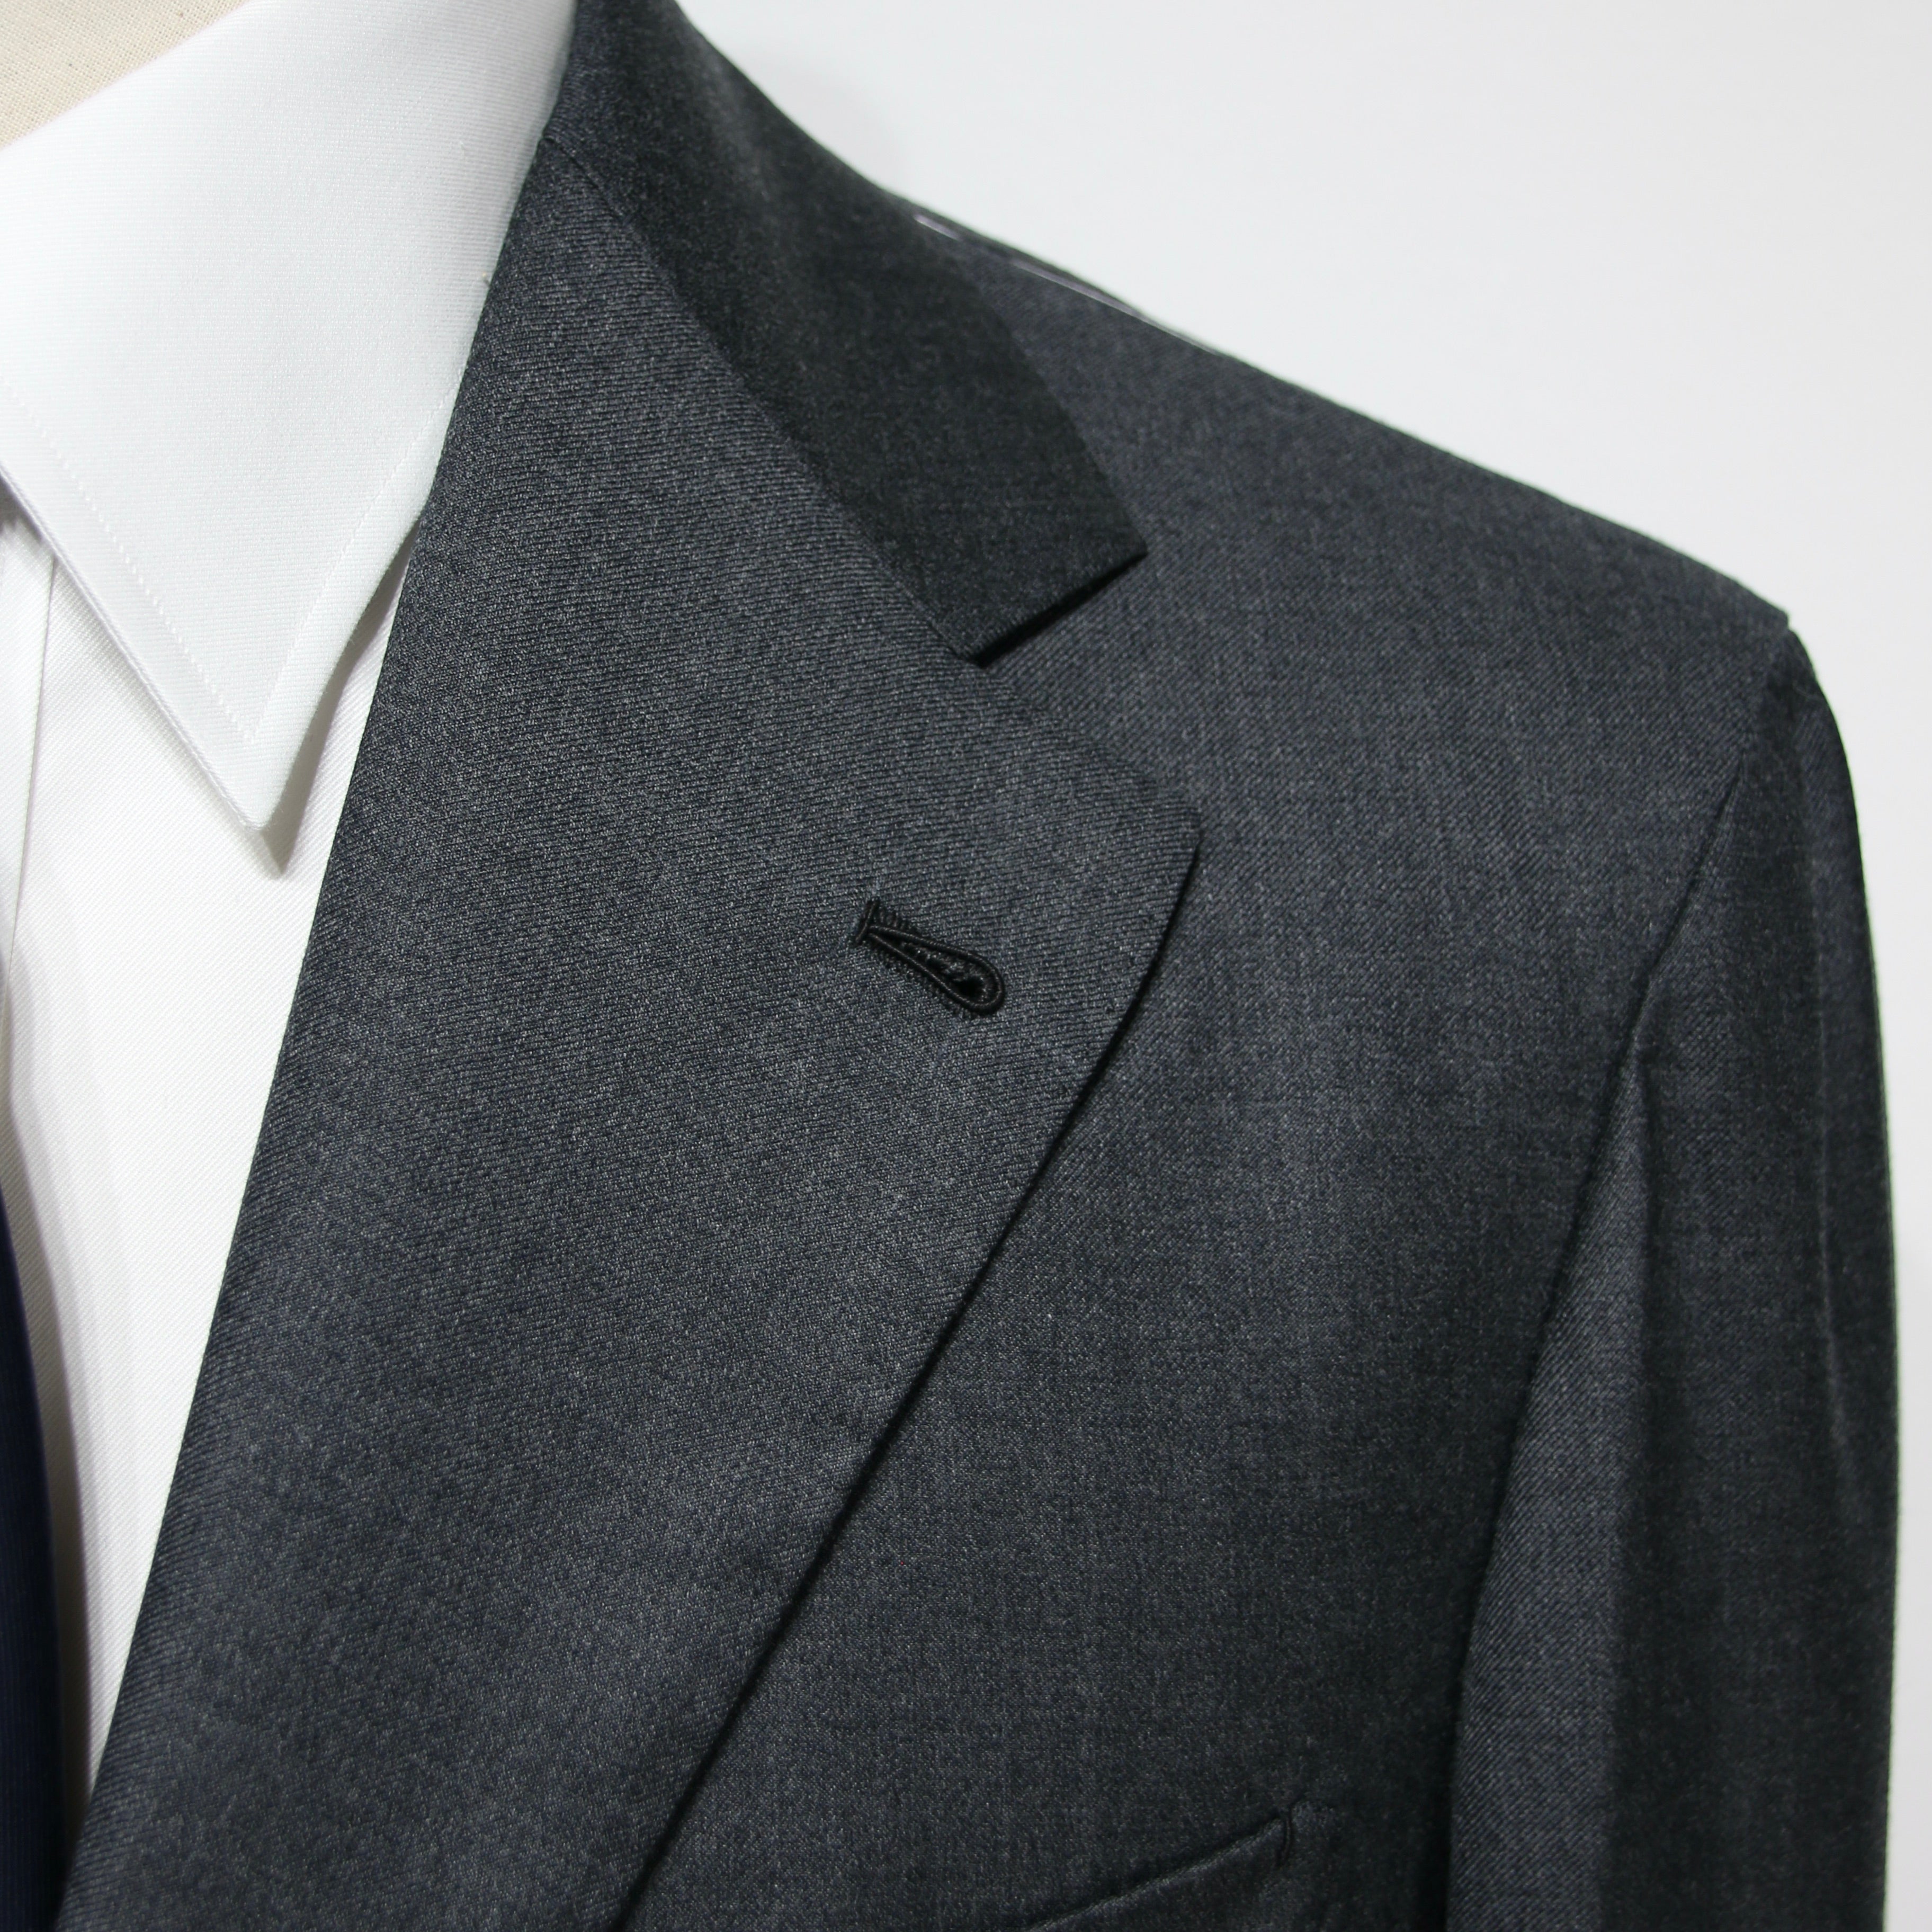 Wool Dark Grey Suit